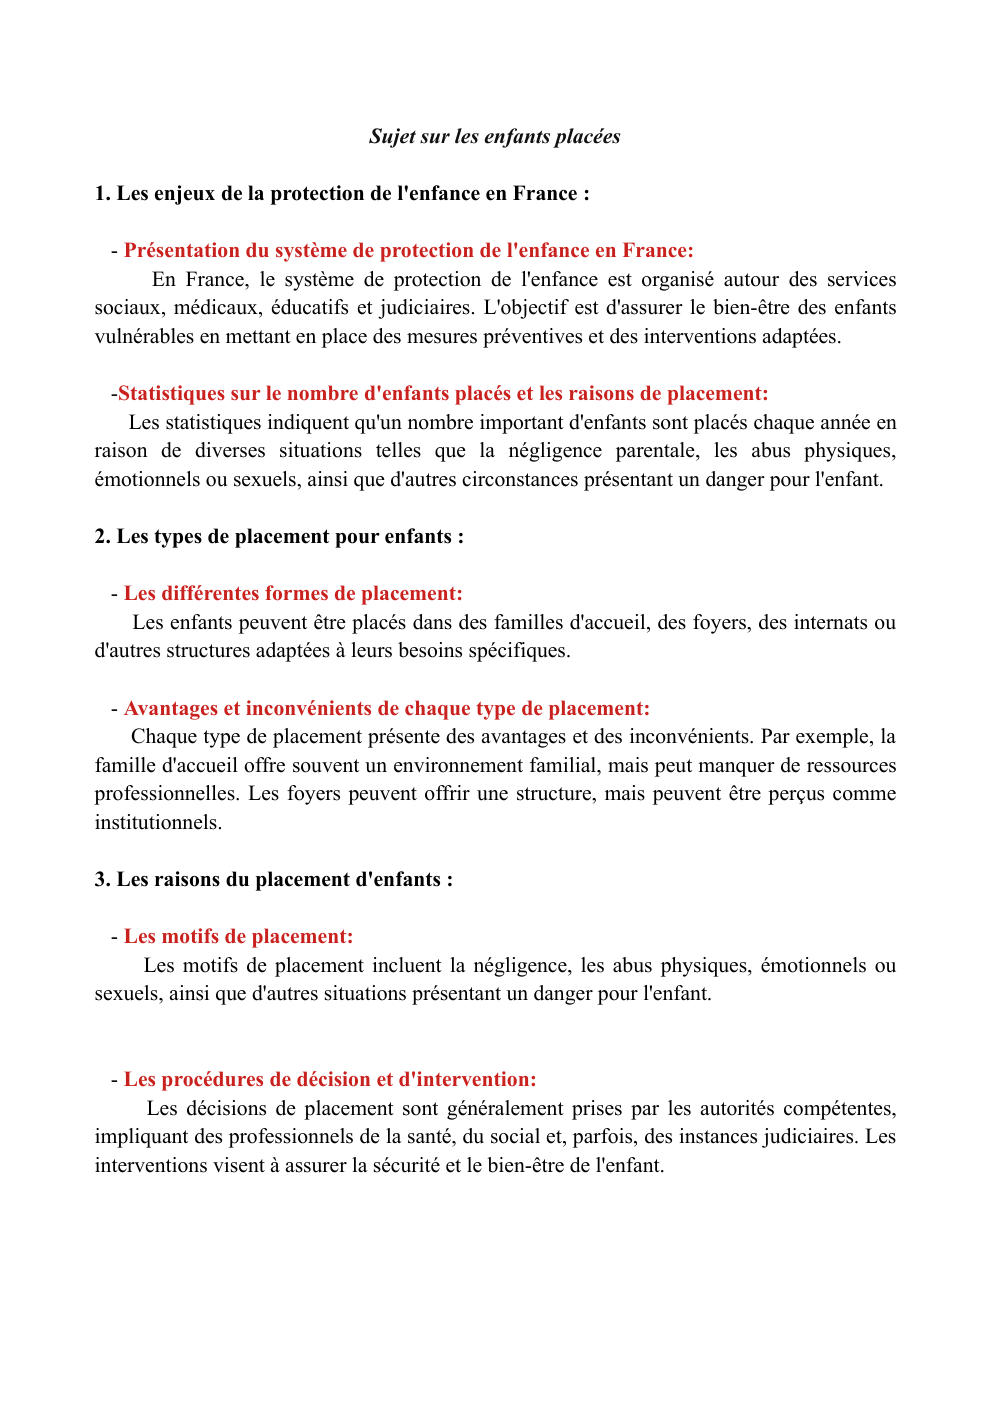 Prévisualisation du document sujet grand oral: Sujet sur les enfants placées 1. Les enjeux de la protection de l'enfance en France :